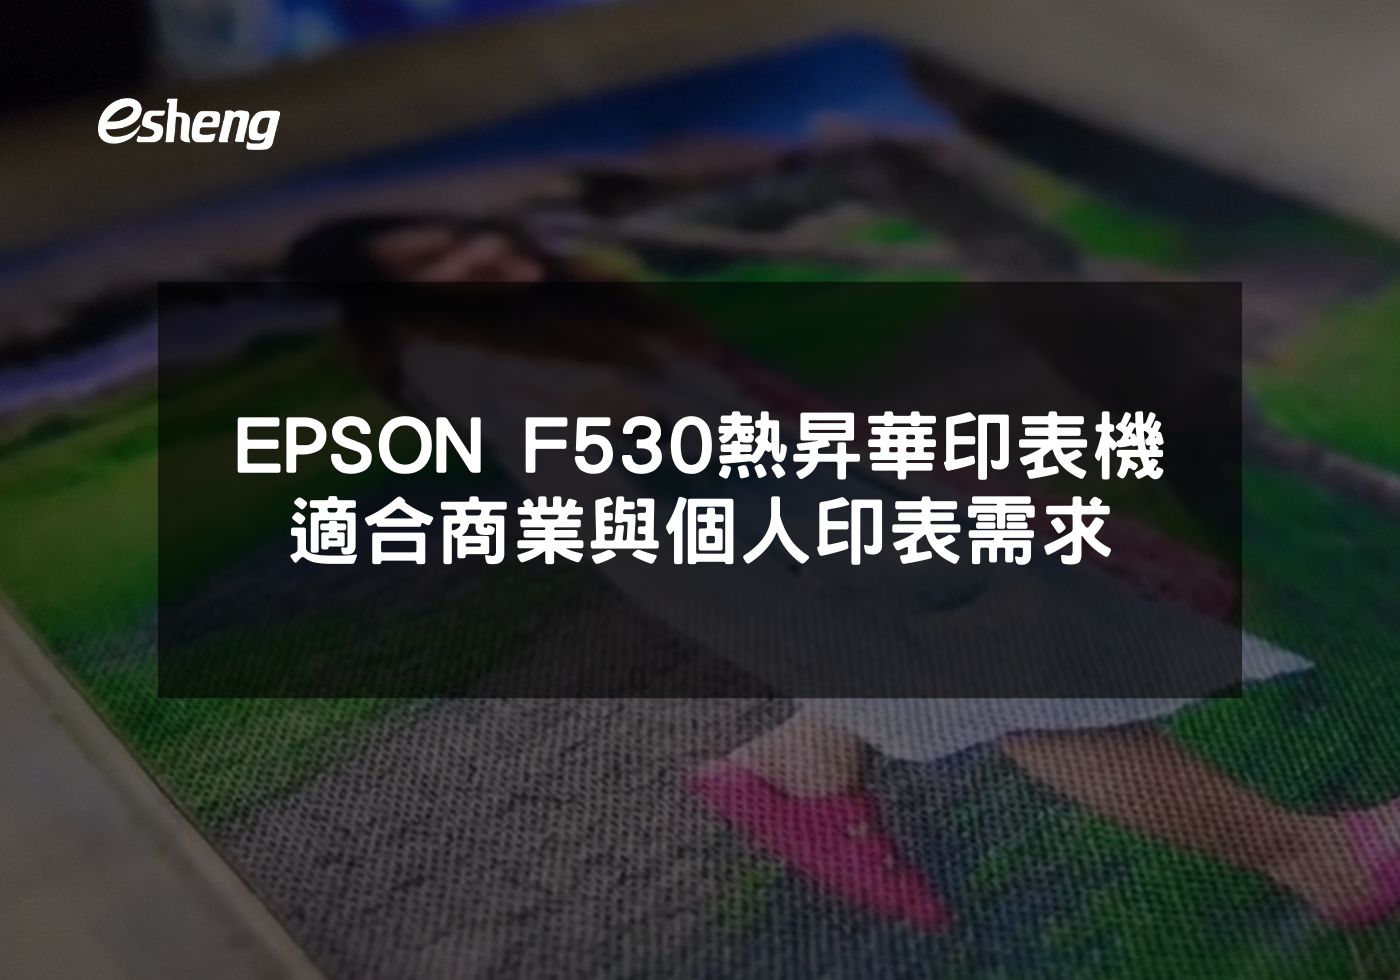 EPSON F530熱昇華印表機高 品質、高效率，適合商業與個人印表需求